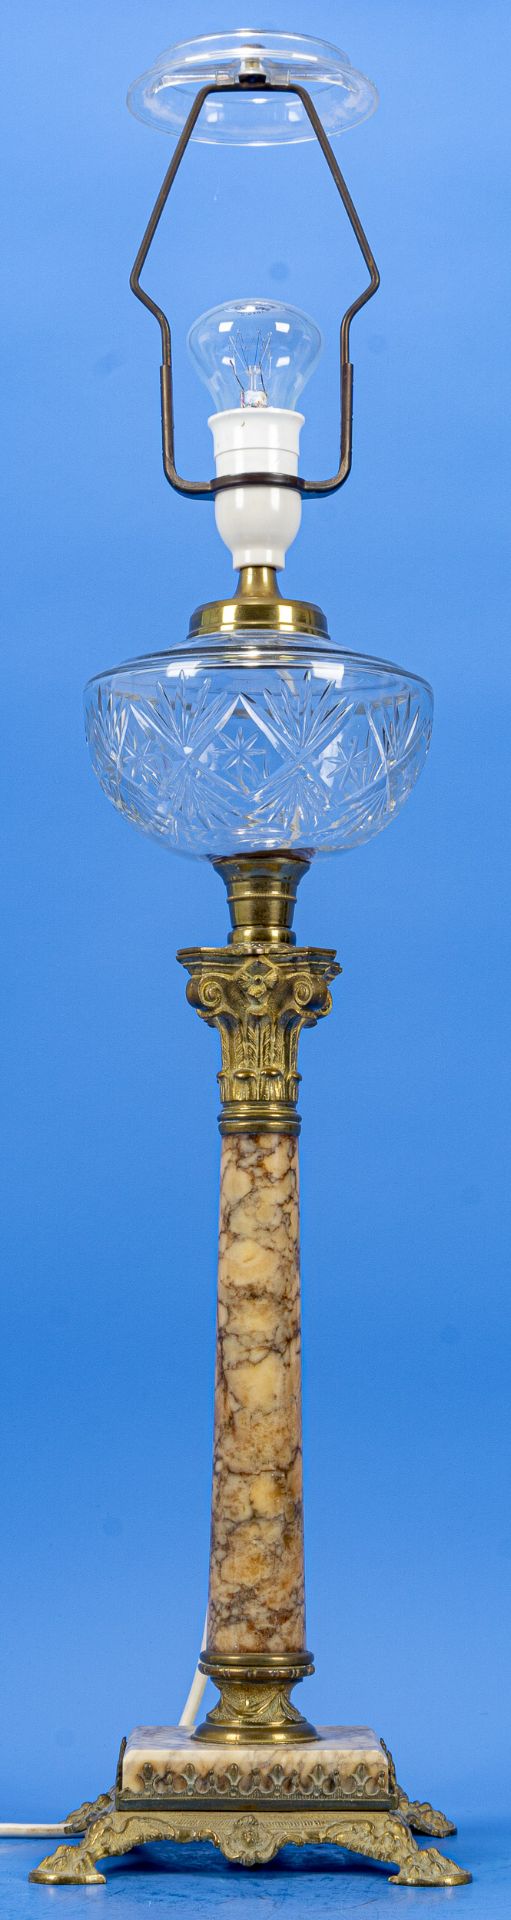 Dekorative "Empire" Tischvase in Form einer nachträglich elektrifizierten Petroleumlampe, Onyxsäule - Image 2 of 6